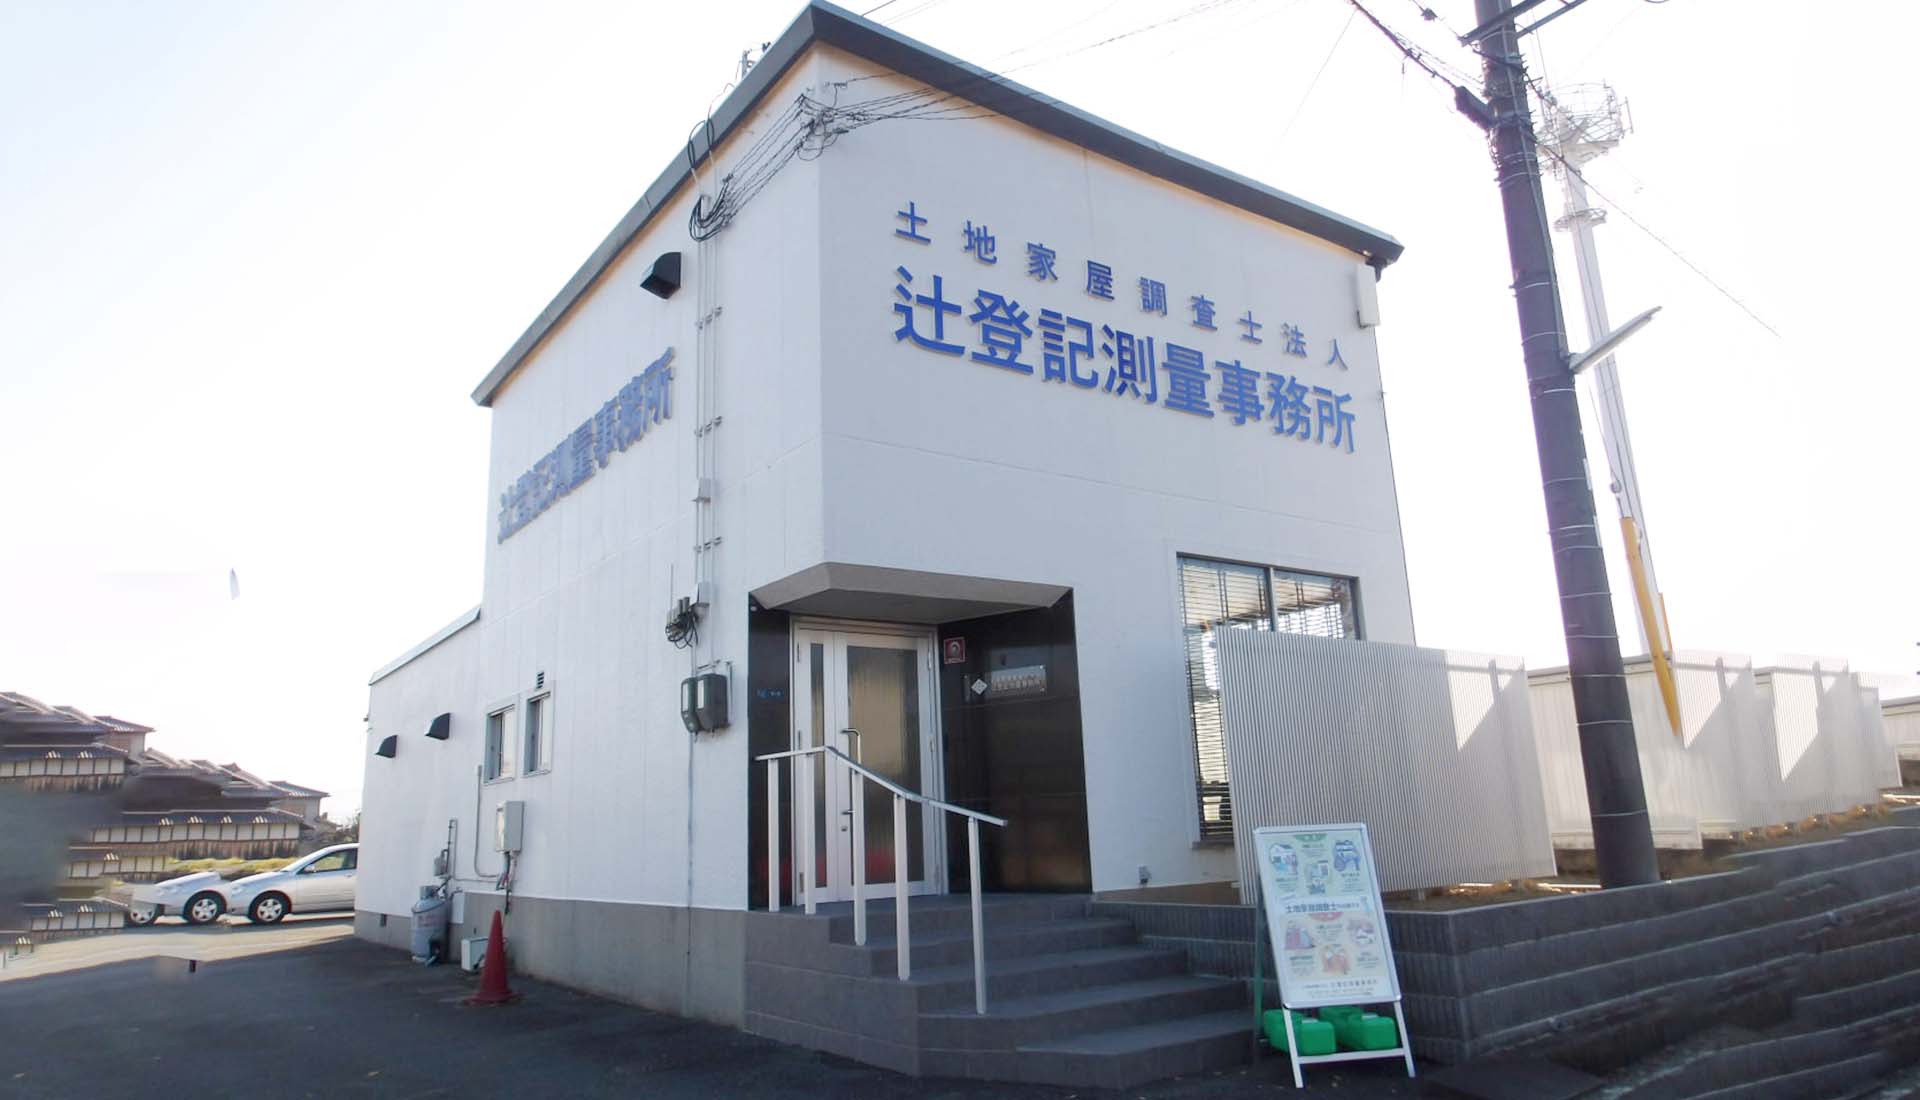 土地売買、相続時や地目変更の登記測量なら大阪府富田林市にある辻登記測量事務所にお任せください。